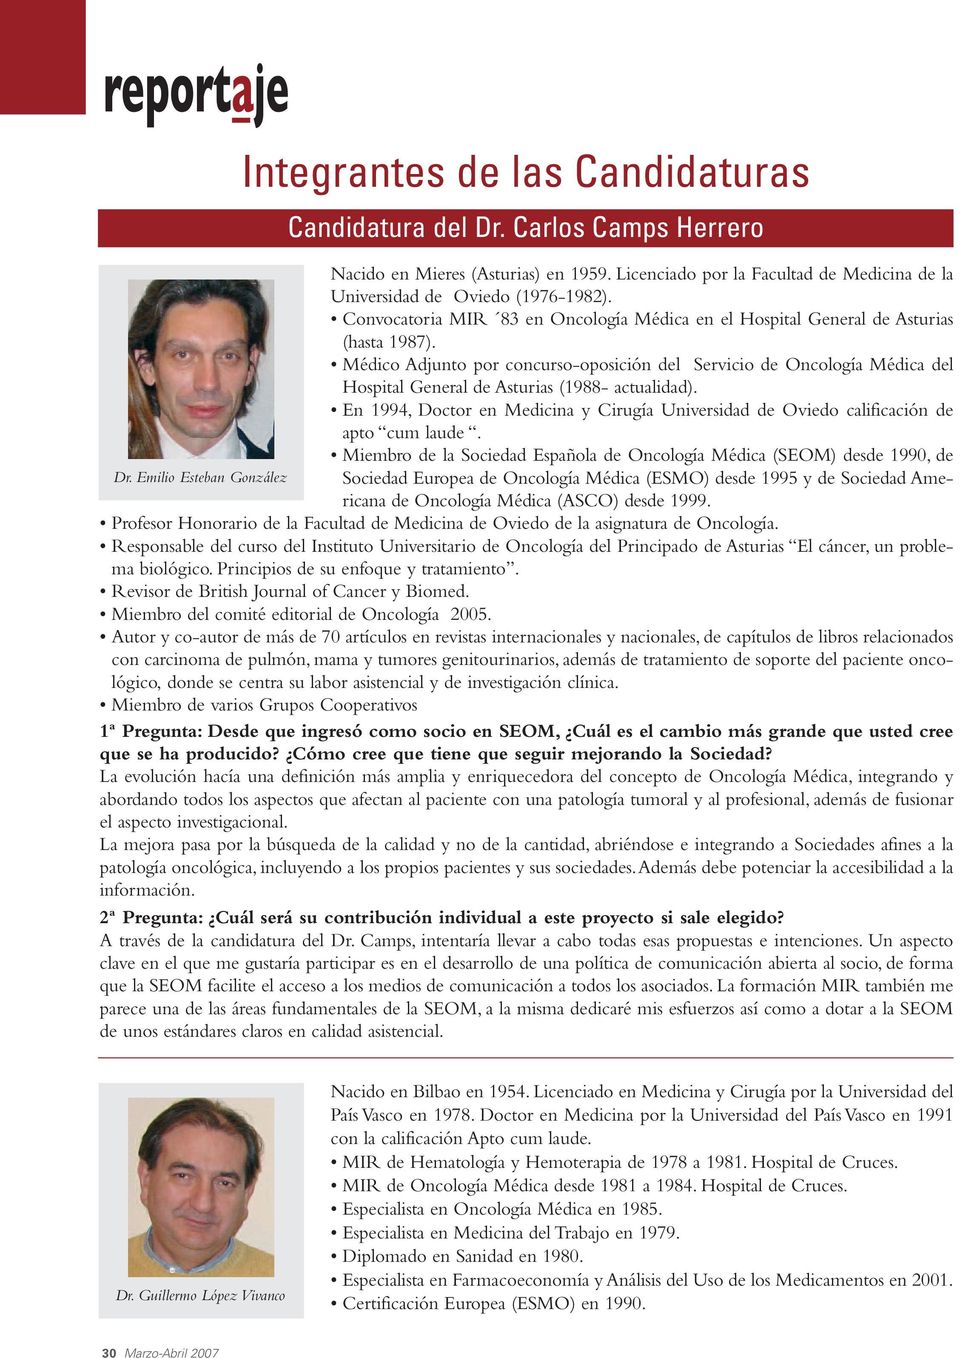 Médico Adjunto por concurso-oposición del Servicio de Oncología Médica del Hospital General de Asturias (1988- actualidad).